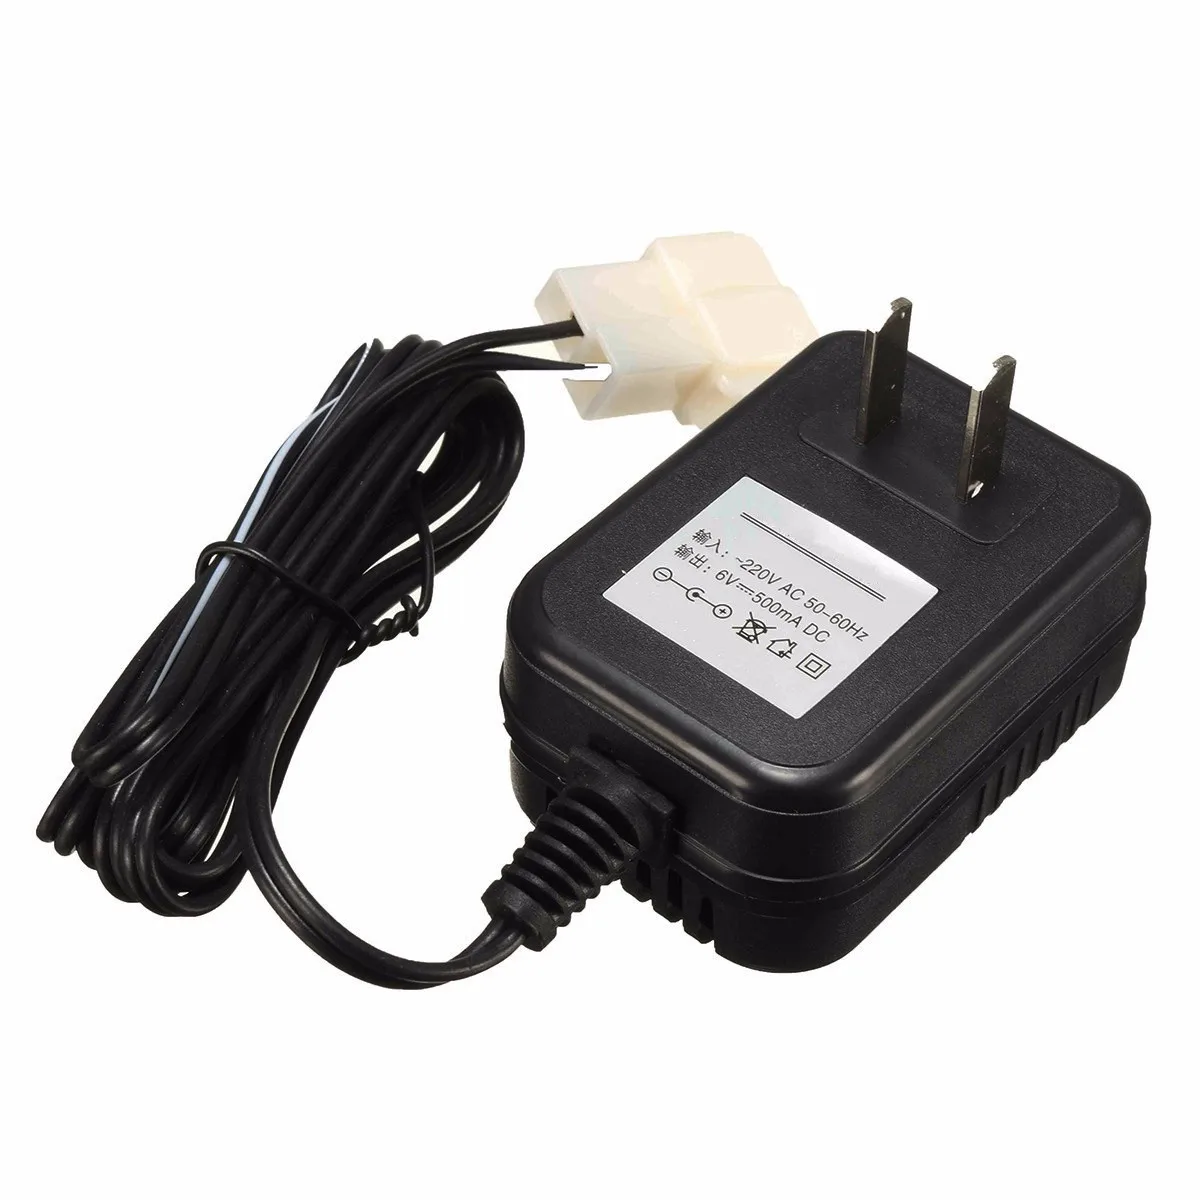 1 шт. настенное зарядное устройство адаптер переменного тока для детей TRAX ATV Quad Car 6 В батарея питание езды на автомобиле